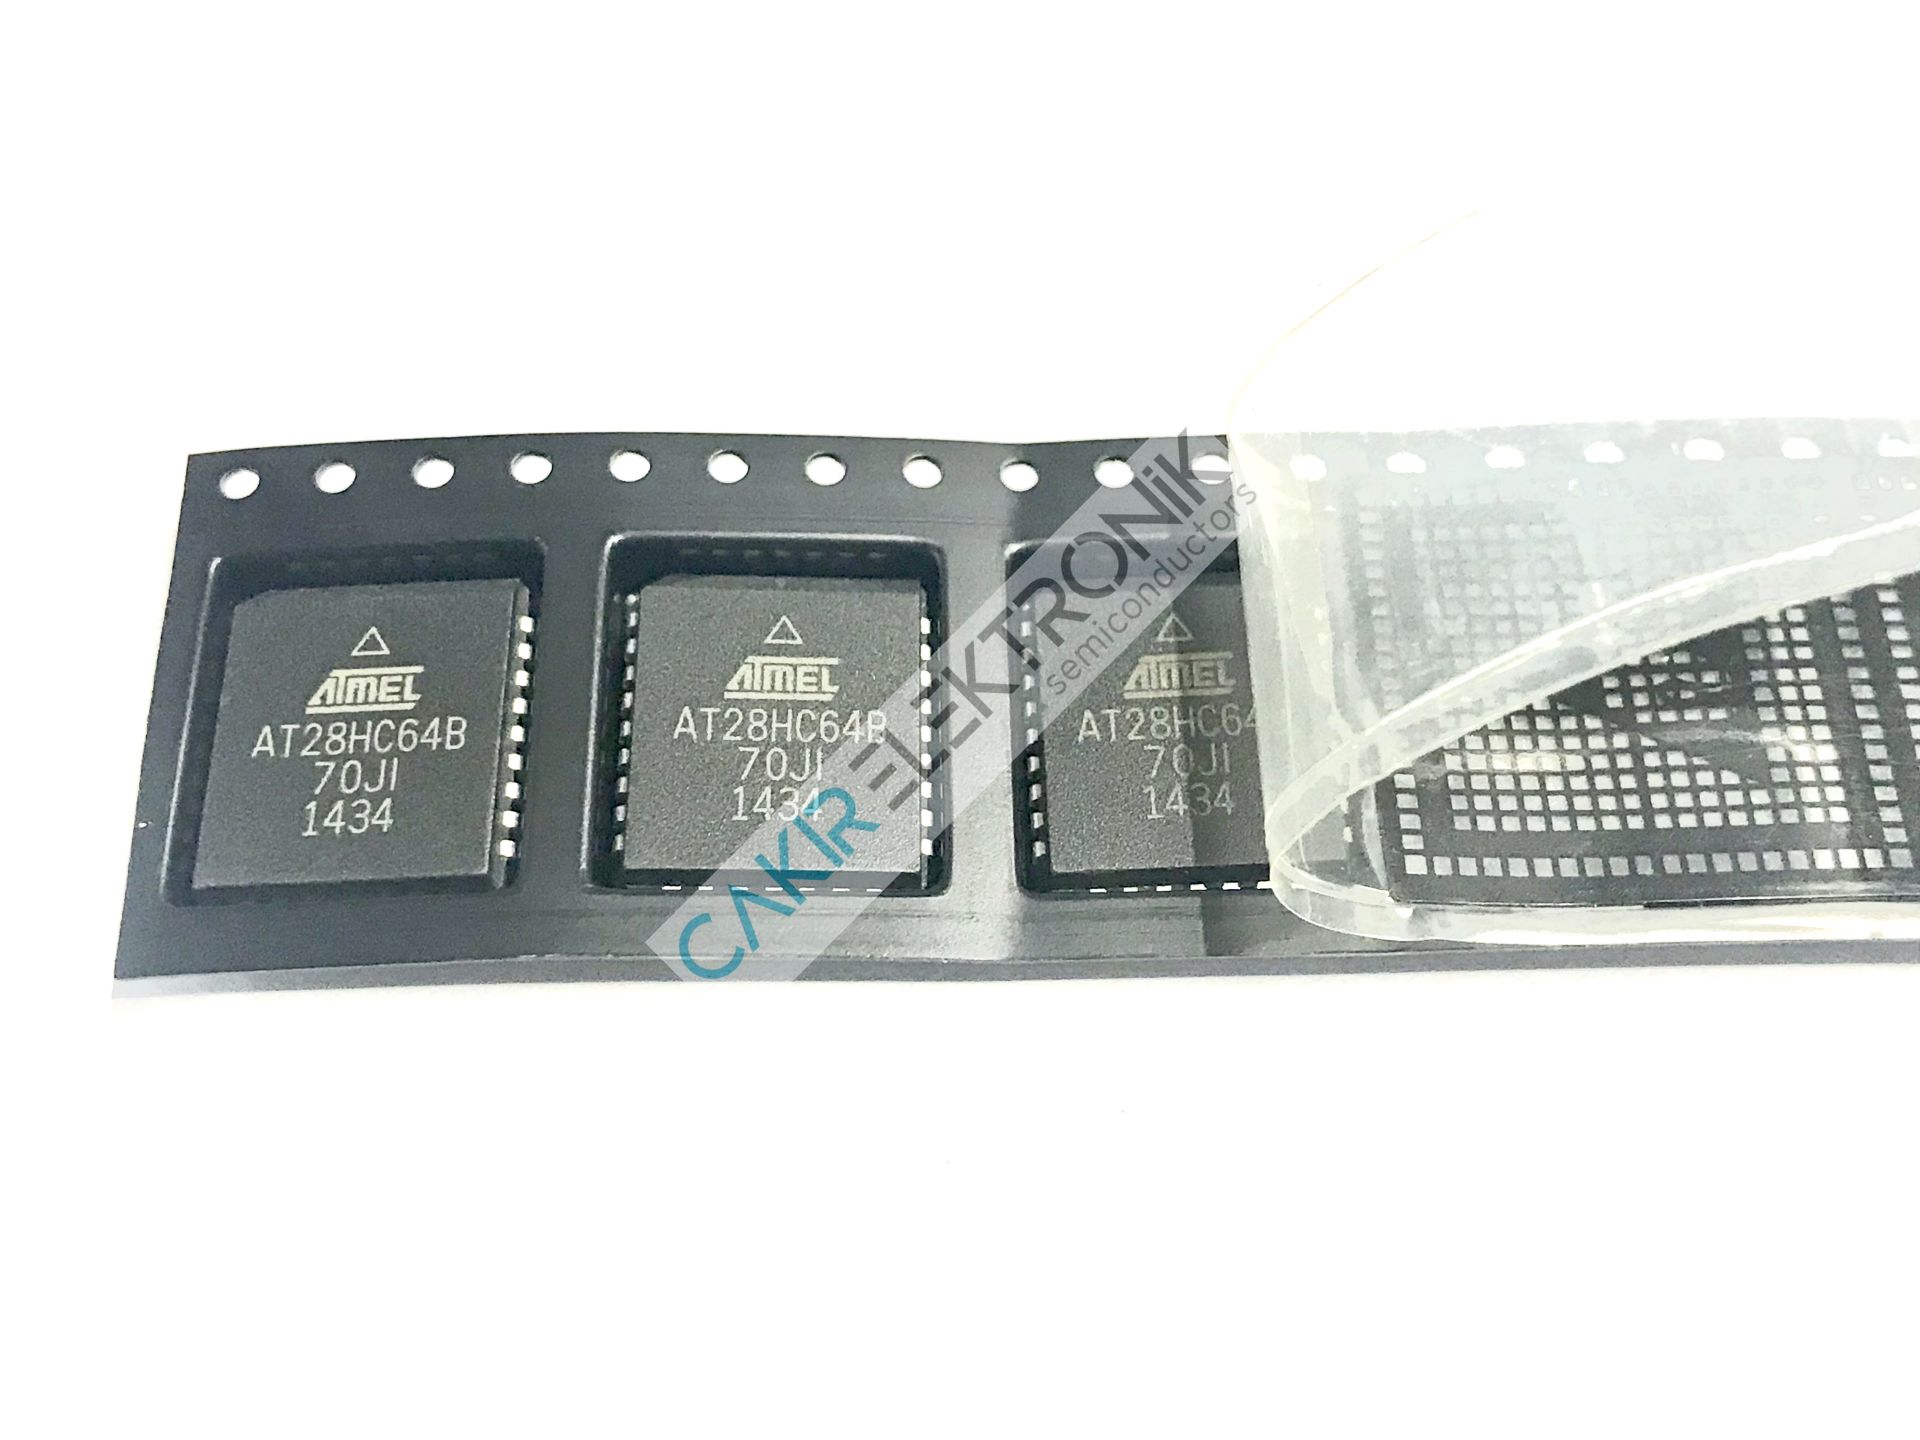 AT28HC64B-70JI , AT28HC64B 70JI, 28HC64 , 64K (8K x 8) High-speed Parallel EEPROM